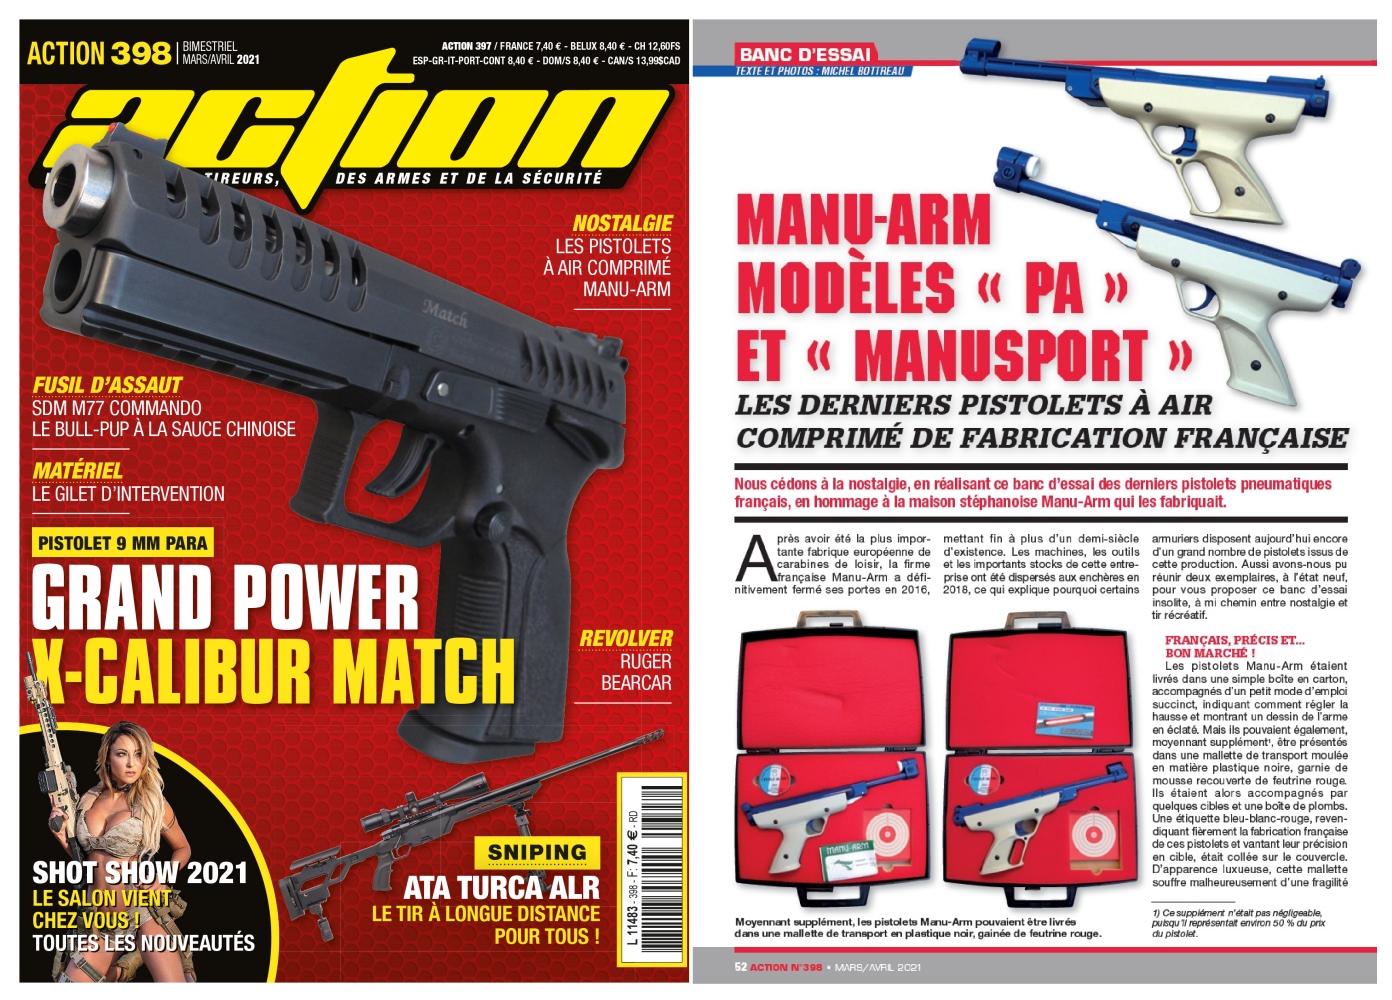 Le banc d’essai du pistolet Grand Power X-Calibur Match a été publié sur 6 pages dans le magazine Action n°398 (mars/avril 2021)